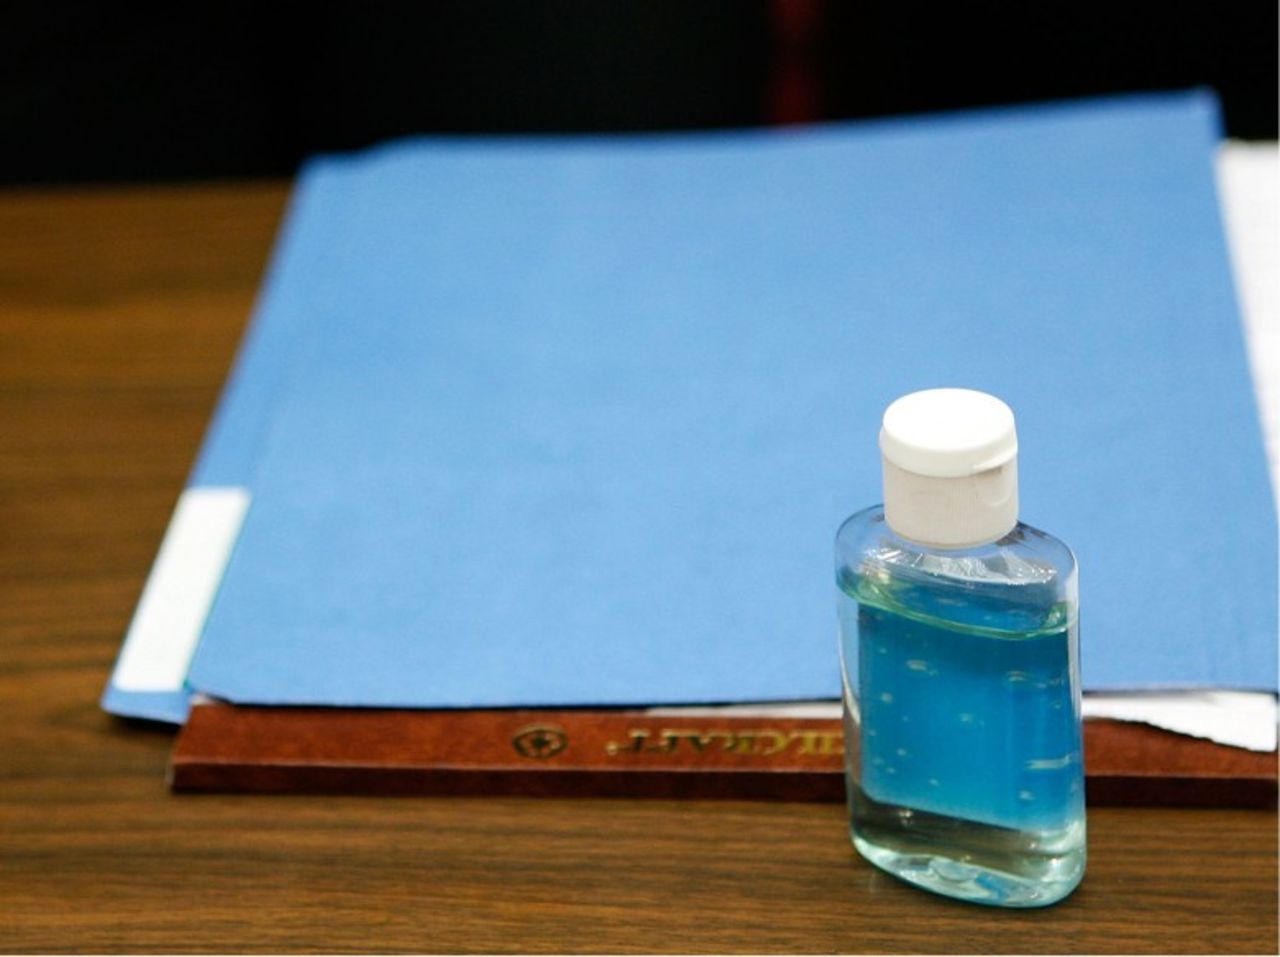 Esta pequeña botella azul para desinfectarse las manos puede ser una fuente de alcohol de alto octanaje. Videos en YouTube les enseñan a los adolescentes cómo destilar el alcohol del producto.